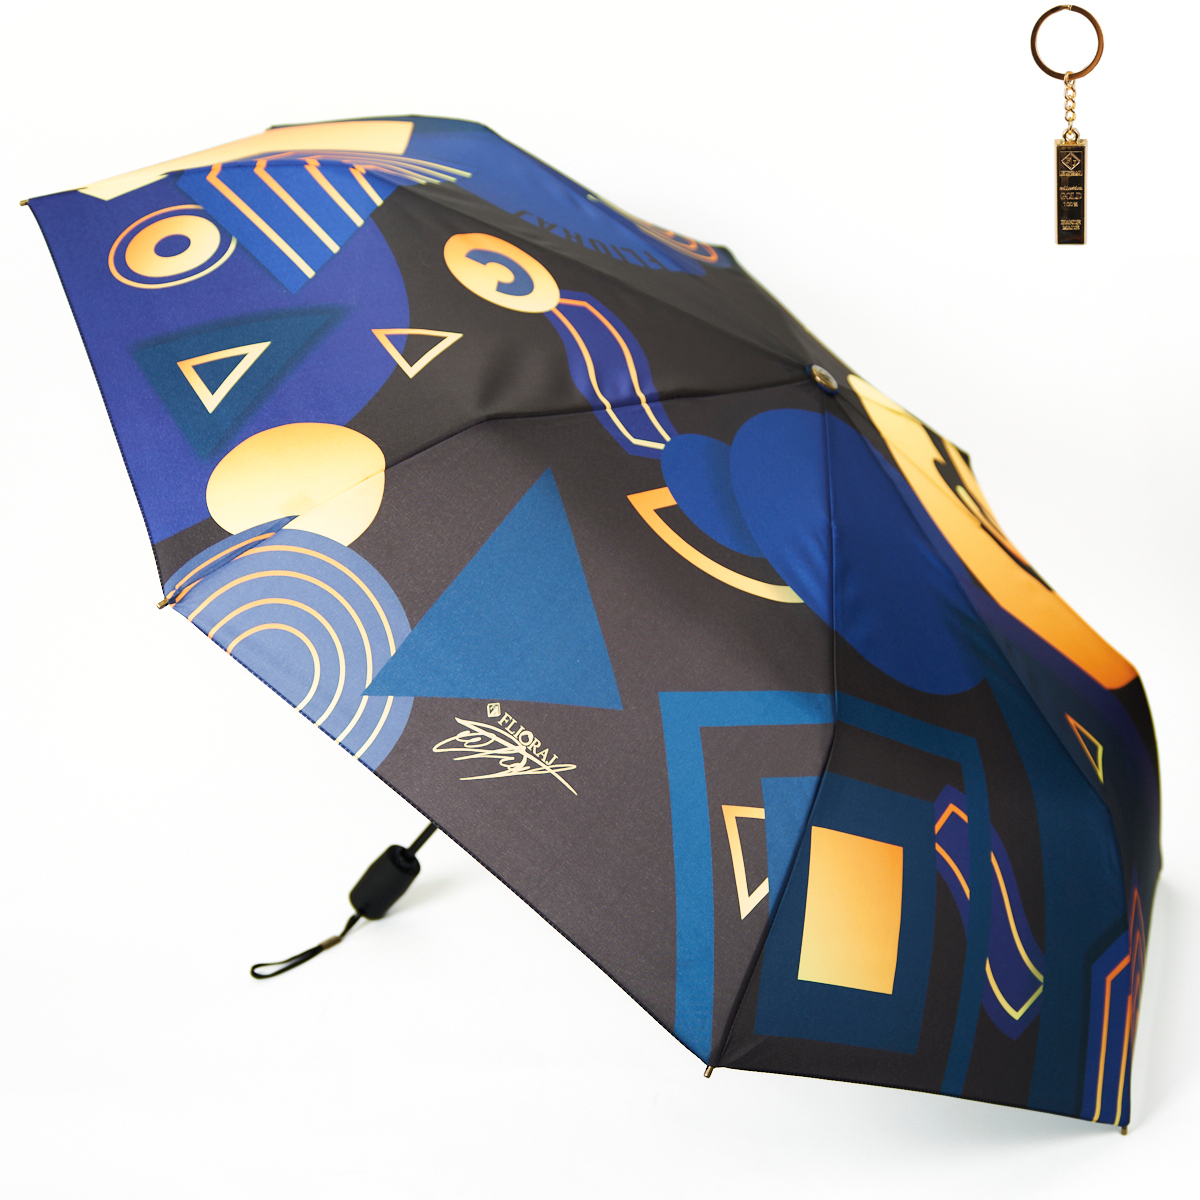 Комплект брелок+зонт складной женский автоматический Flioraj 16100 FJ синий